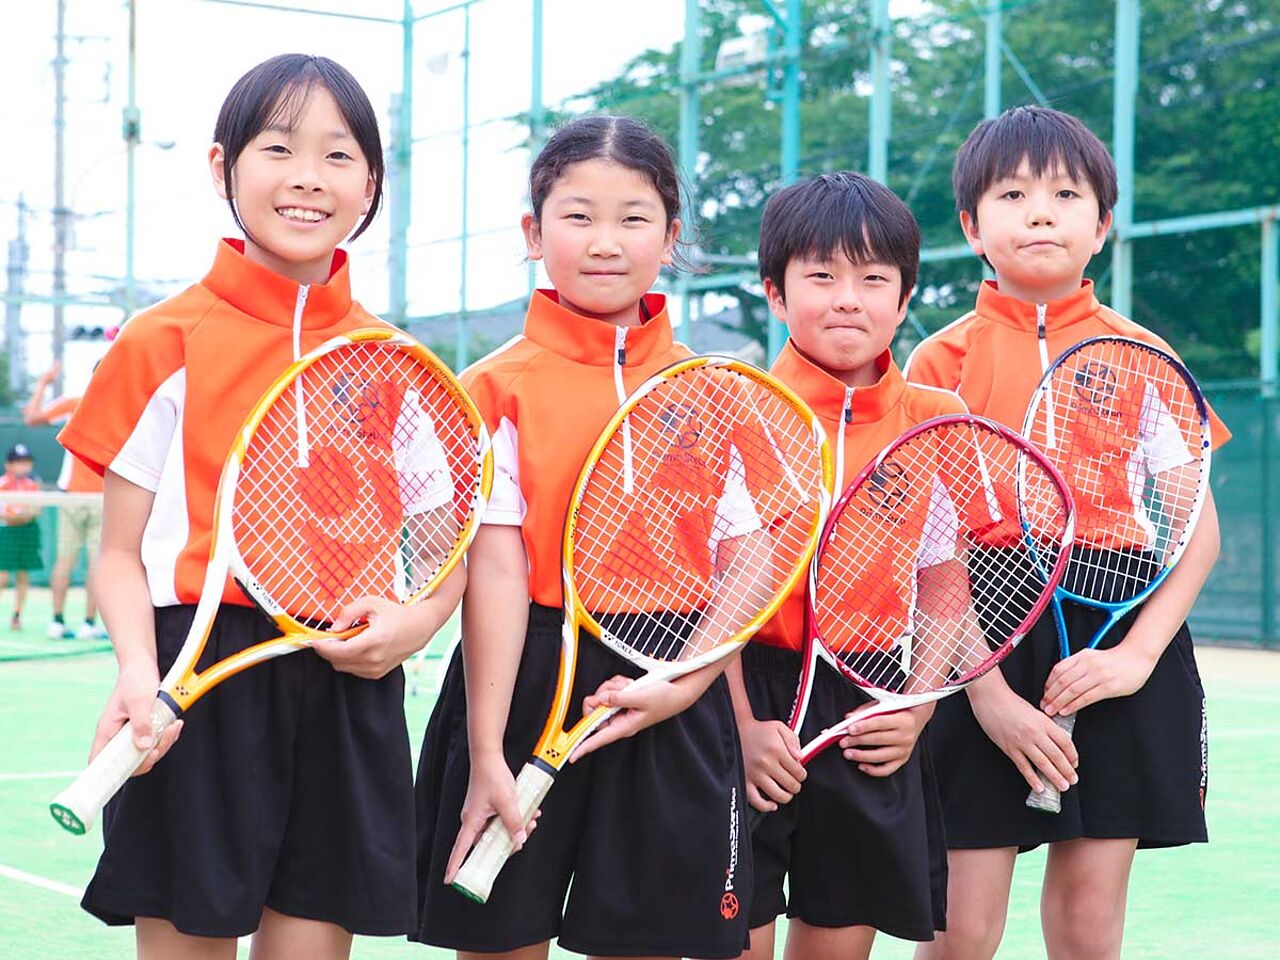 テニススクール プリマステラの子どもたちの画像